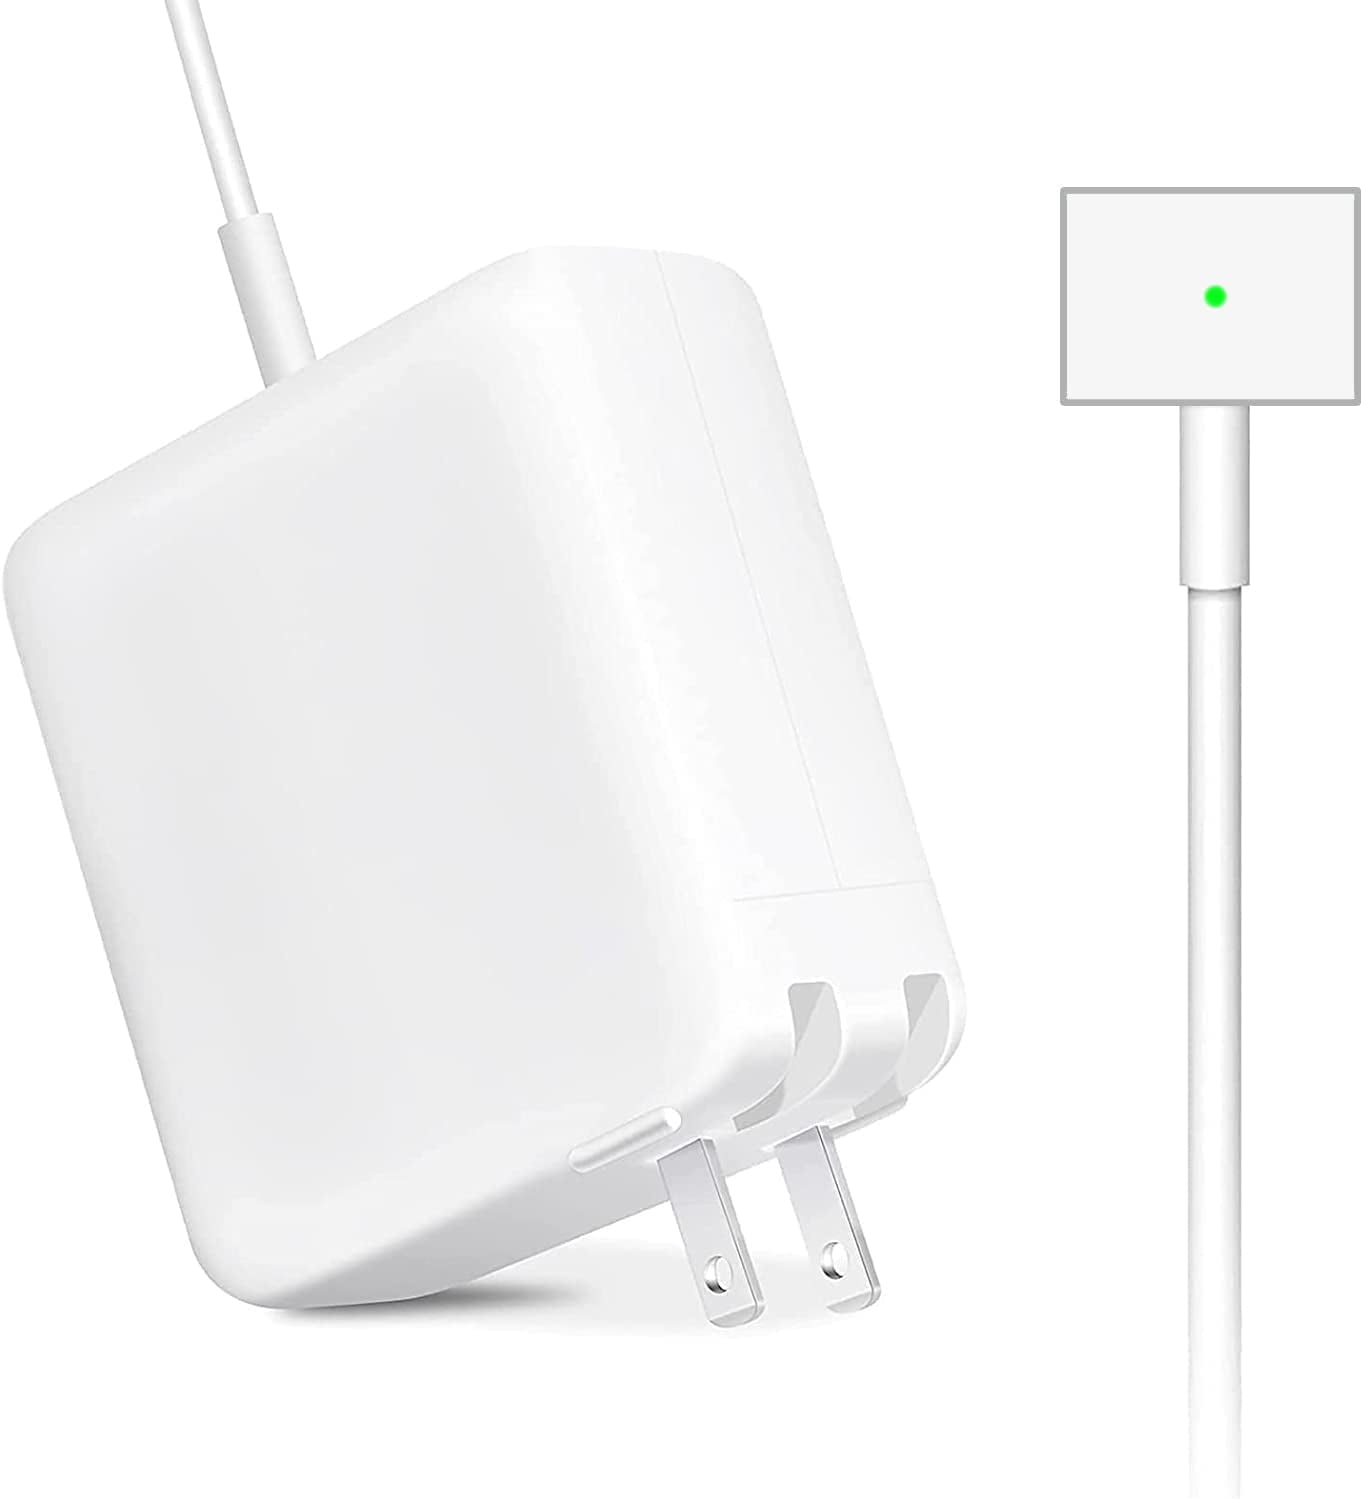 Accessoires Energie - Chargeur 16.5V 85W L pour Macbook et Macbook